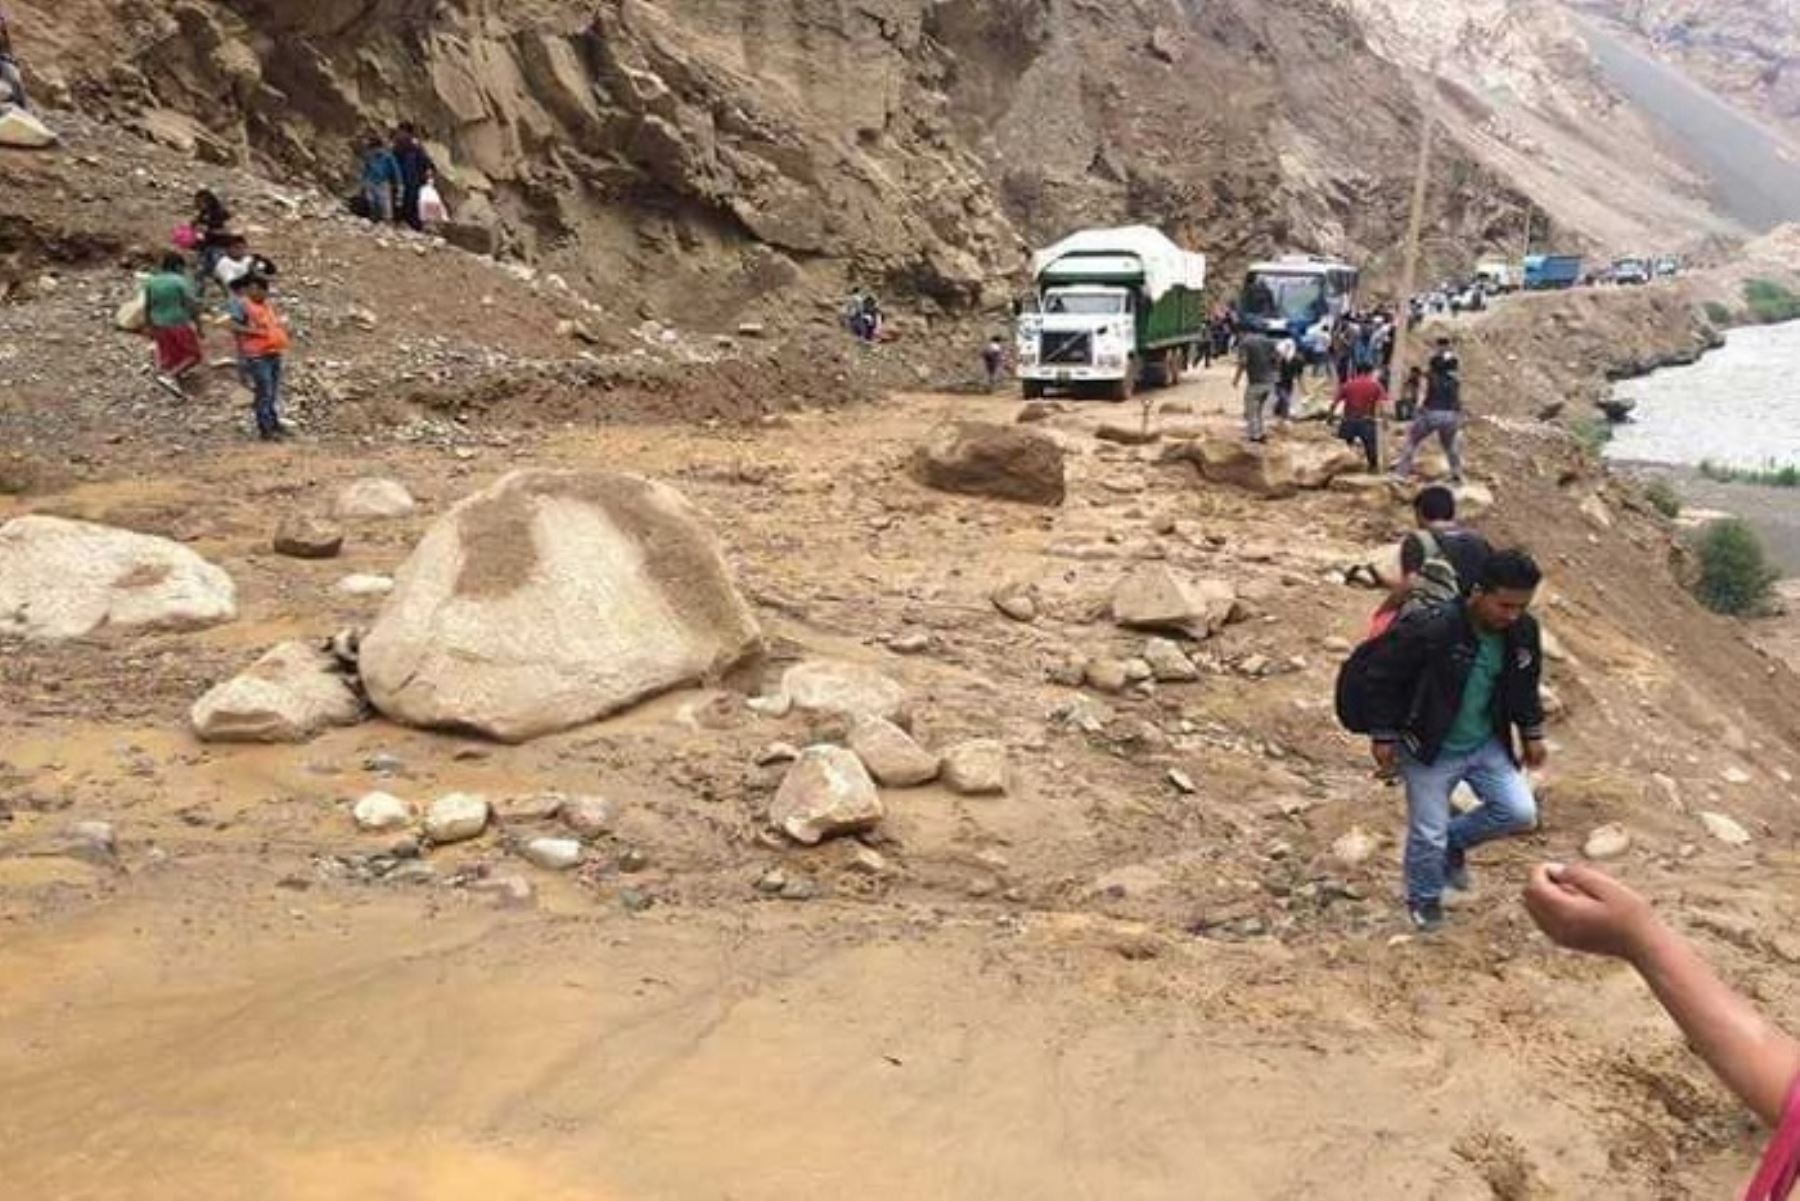 Deslizamiento de tierra y rocas a causa de lluvias intensas, han restringido el tránsito en la vía Huaraz – Casma, en la región Áncash, informó hoy el Centro de Operaciones de Emergencia Regional (COER) Áncash.